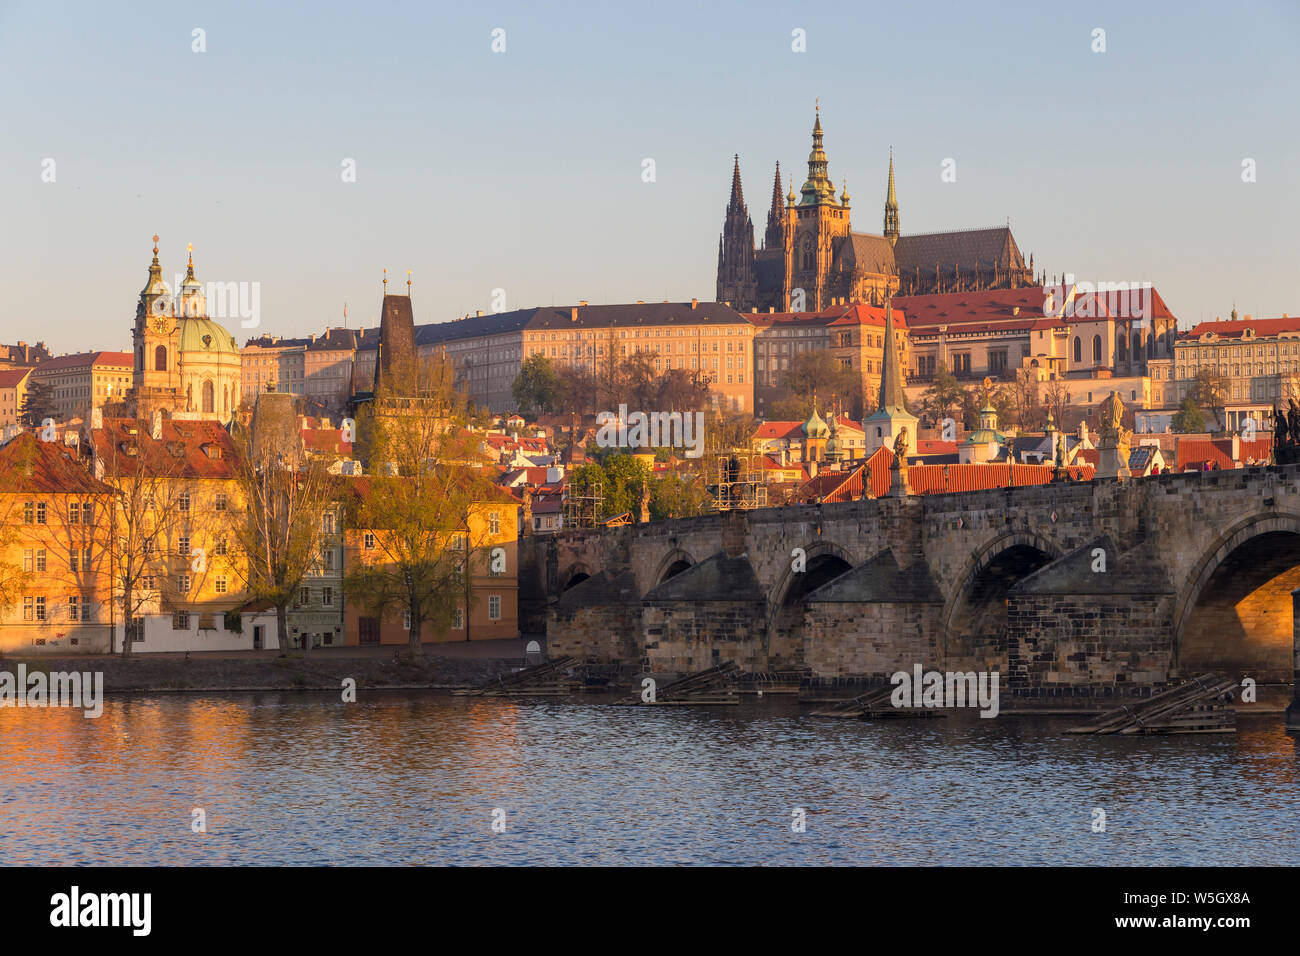 Vue depuis les rives de la rivière Vltava au Pont Charles, Château de Prague et cathédrale Saint-Guy, l'UNESCO, Prague, la Bohême, République Tchèque Banque D'Images